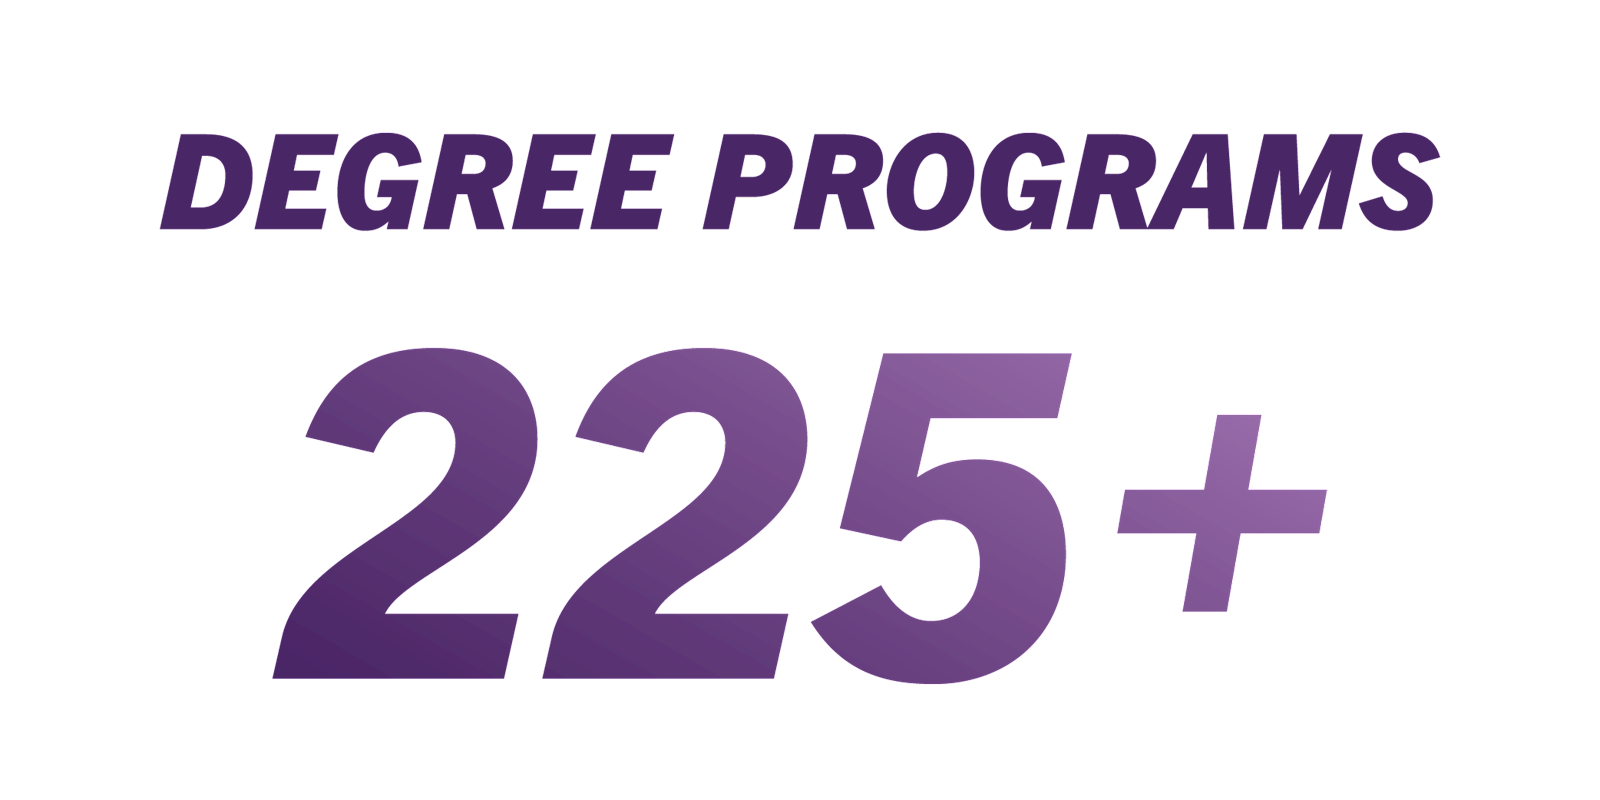 WSU has more than 225 degree programs.